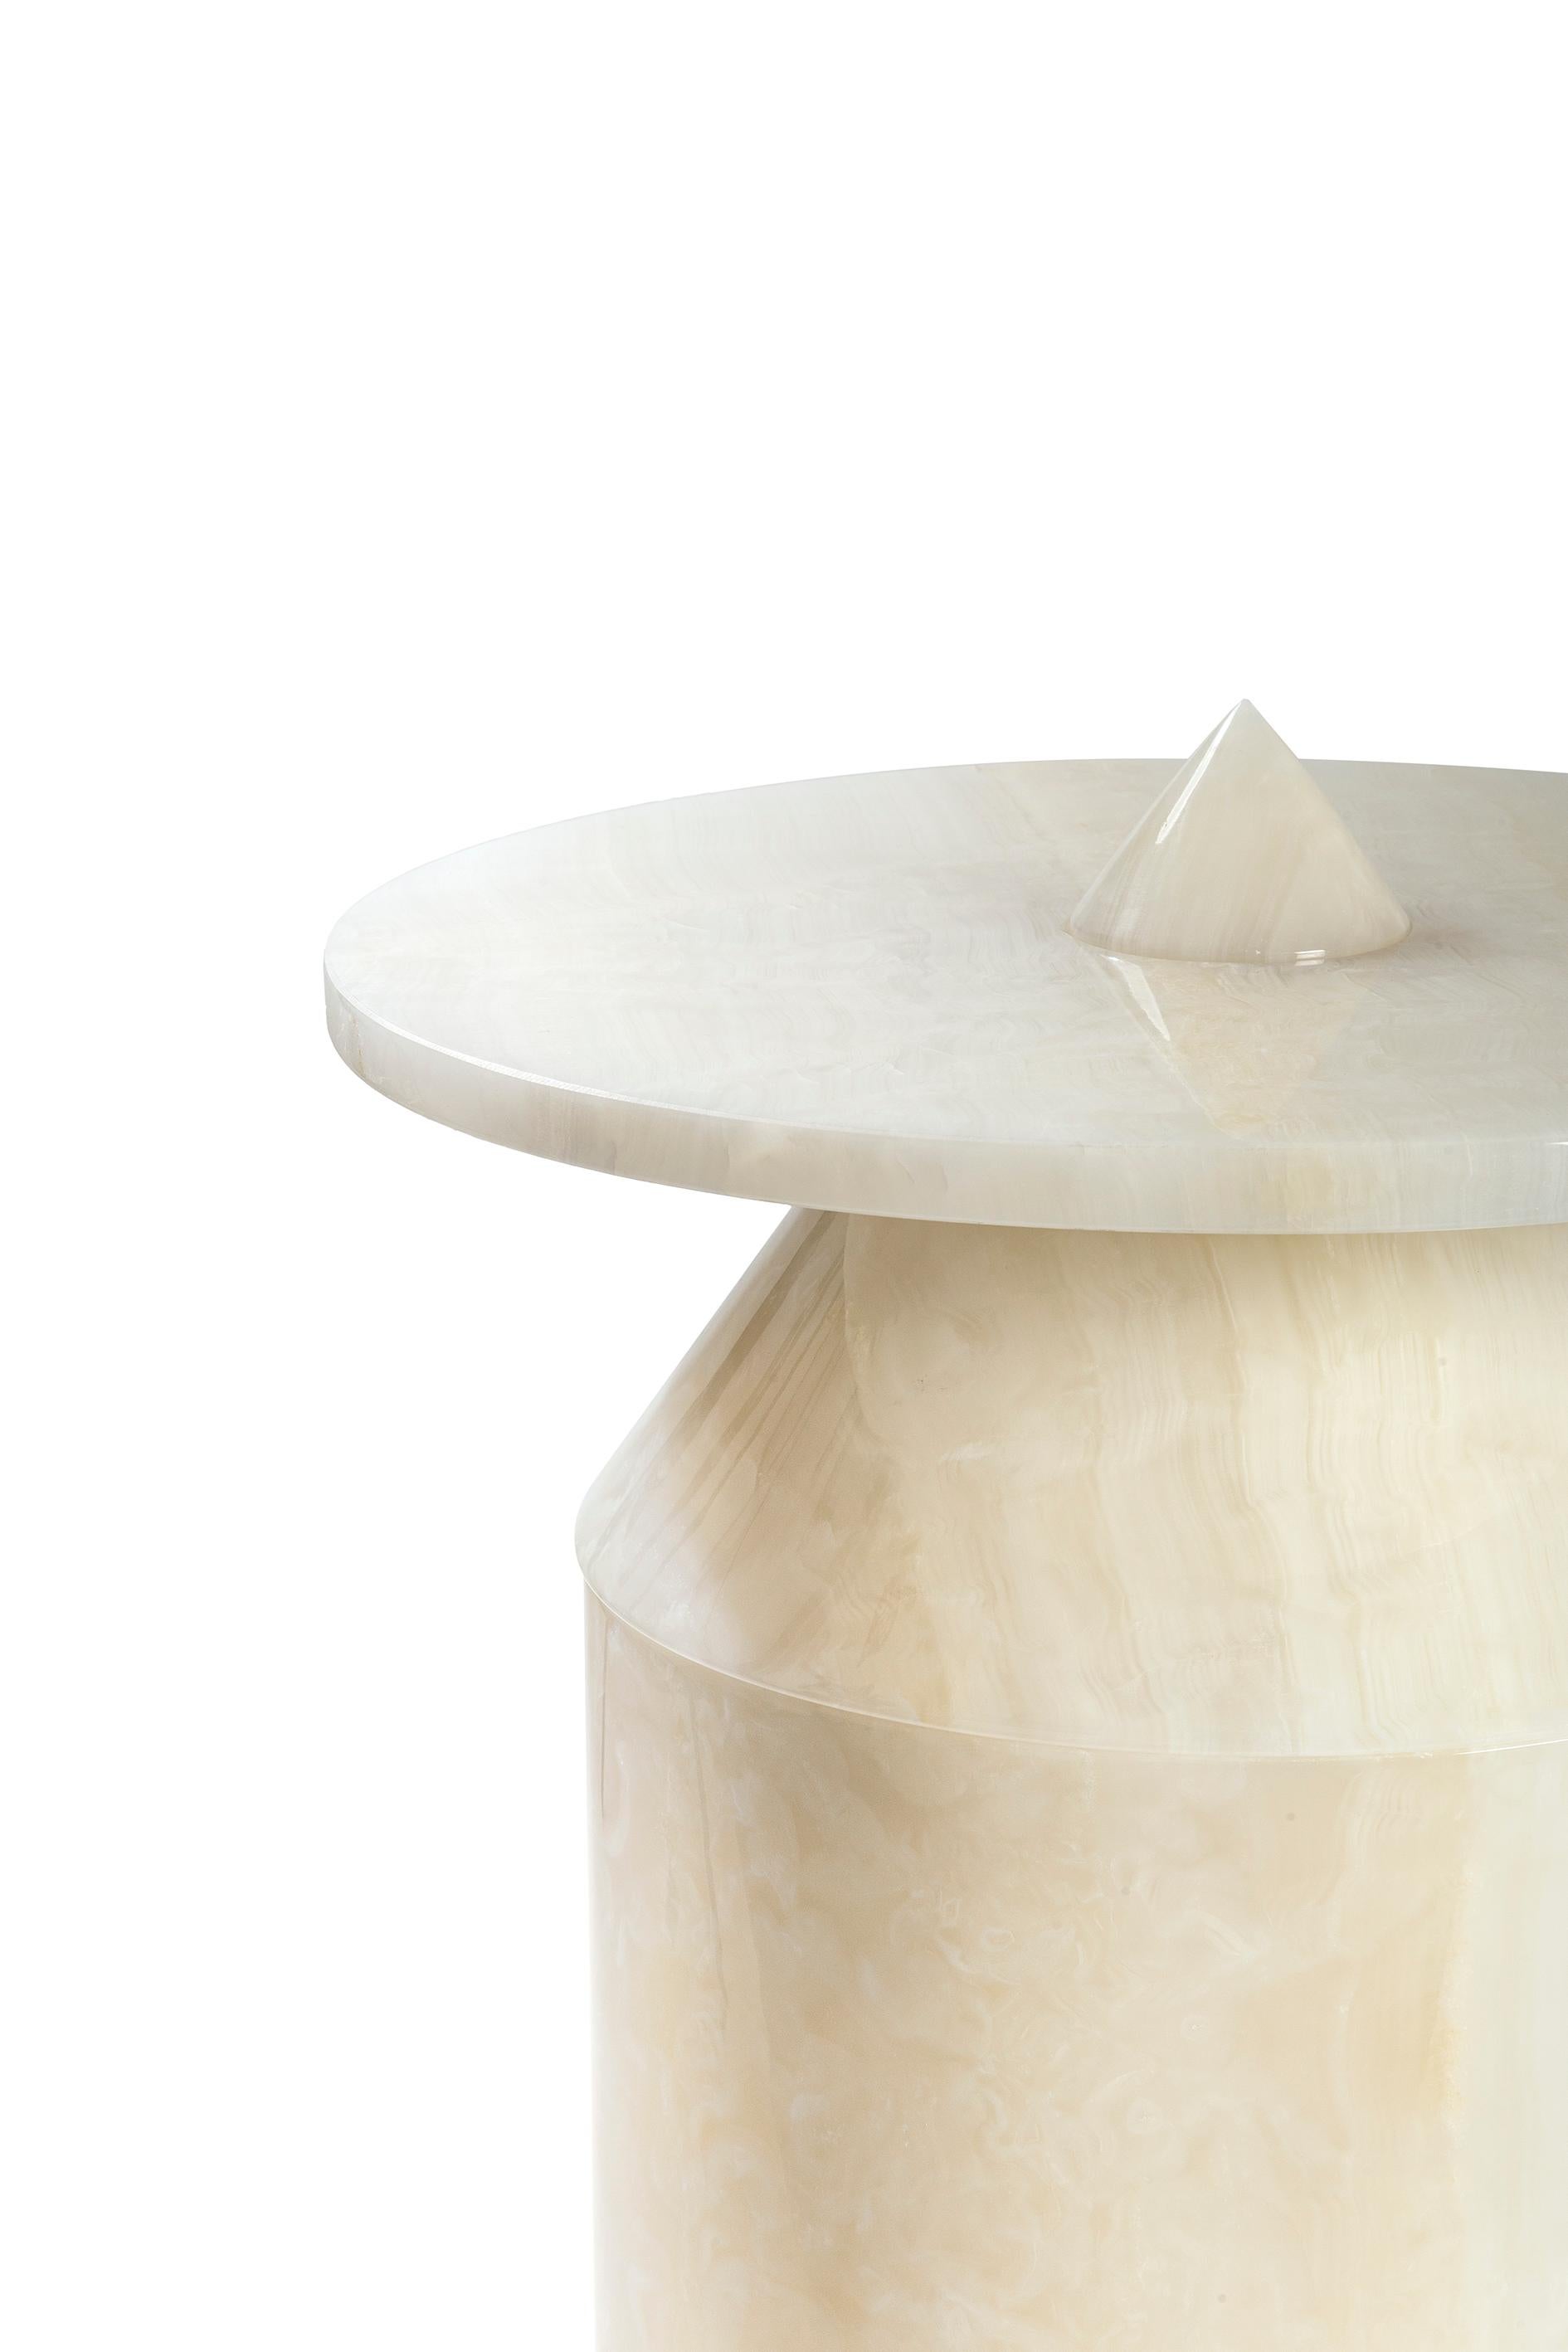 Italian New Modern Side Table in White Onyx Marble, Creator  Karen Chekerdjian Stock For Sale